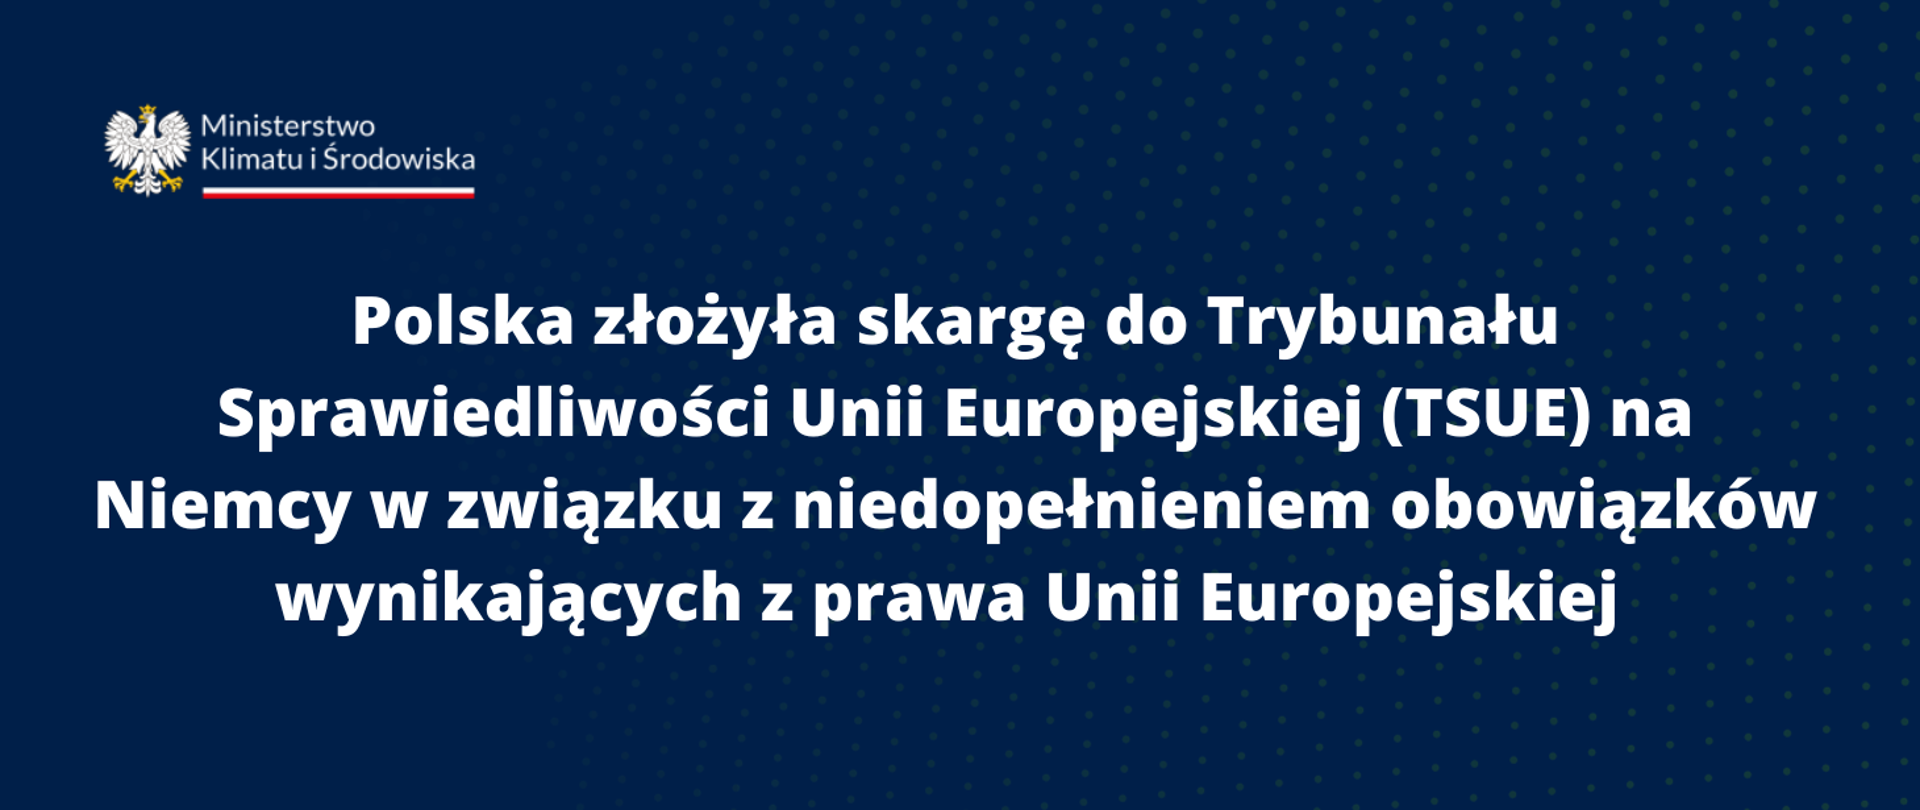 Polska złożyła skargę do Trybunału Sprawiedliwości Unii Europejskiej (TSUE) na Niemcy w związku z niedopełnieniem obowiązków wynikających z prawa Unii Europejskiej 